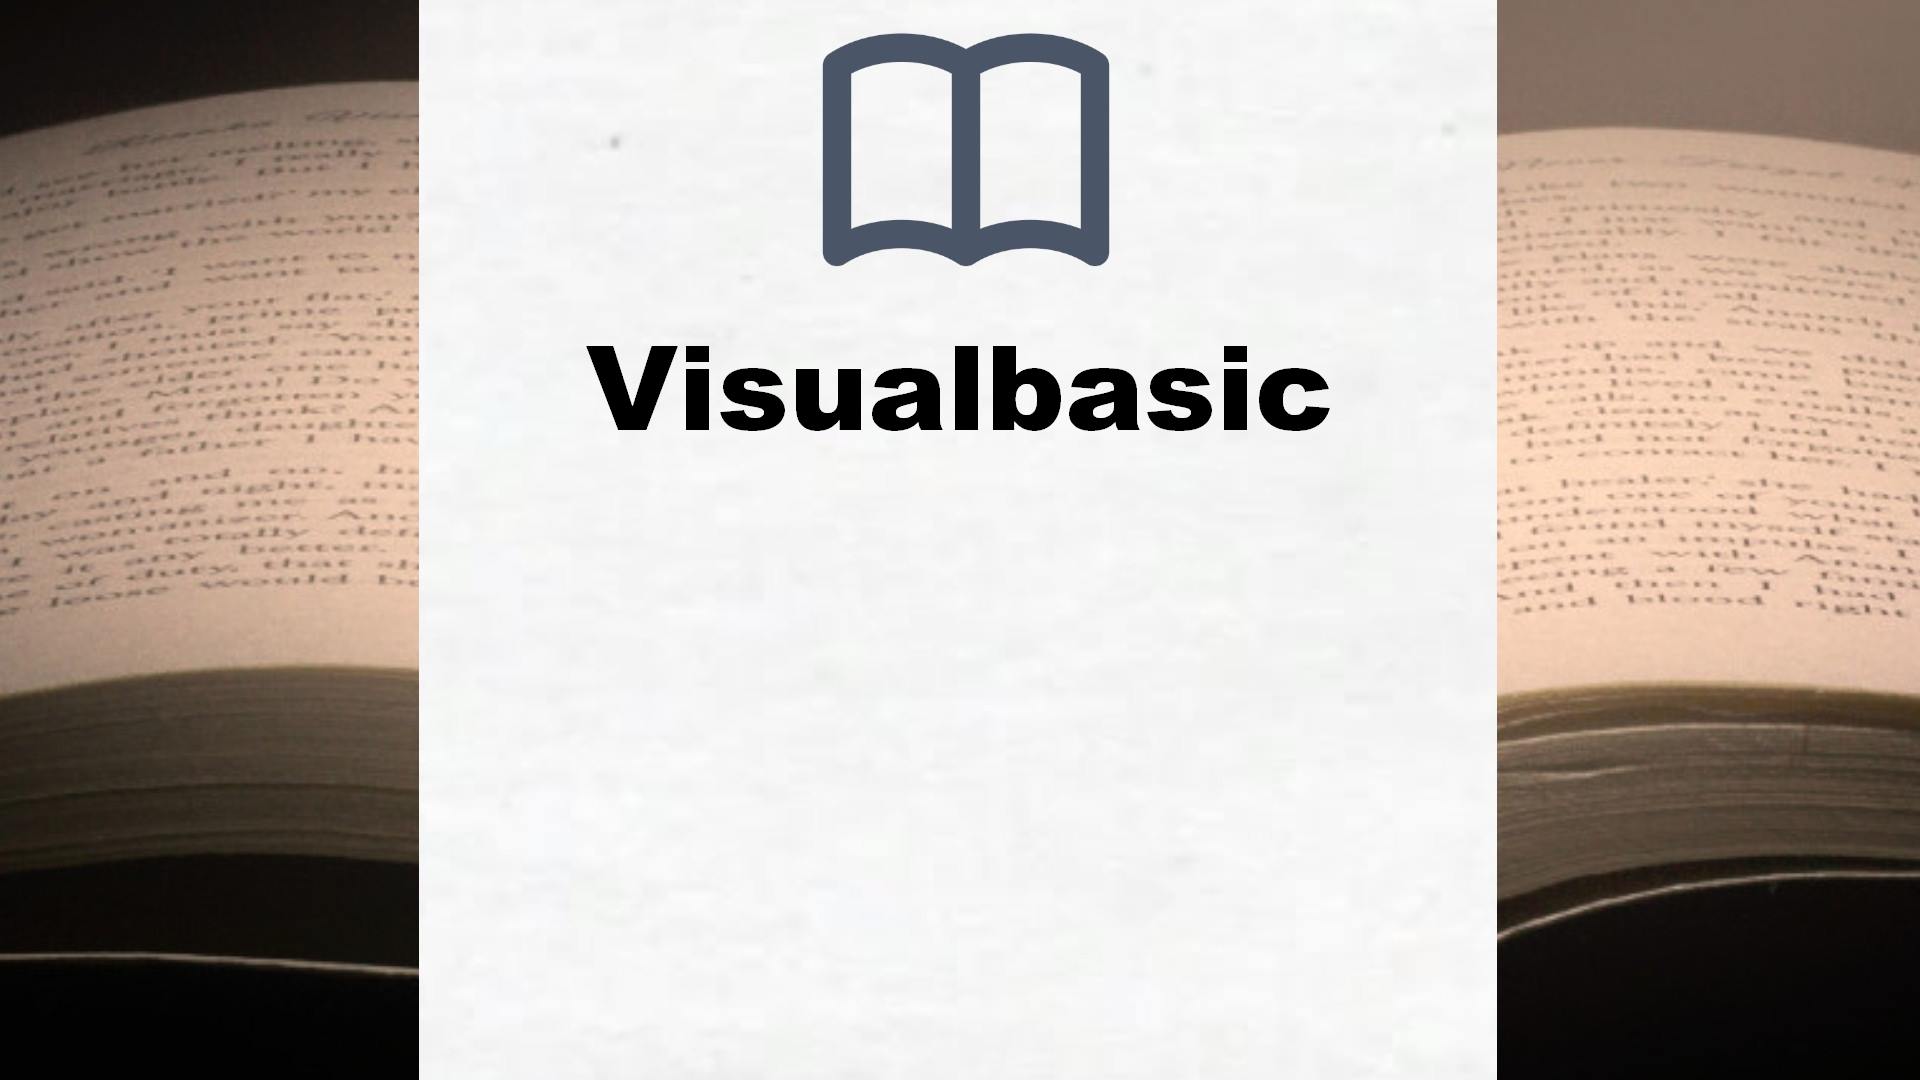 Bücher über Visualbasic